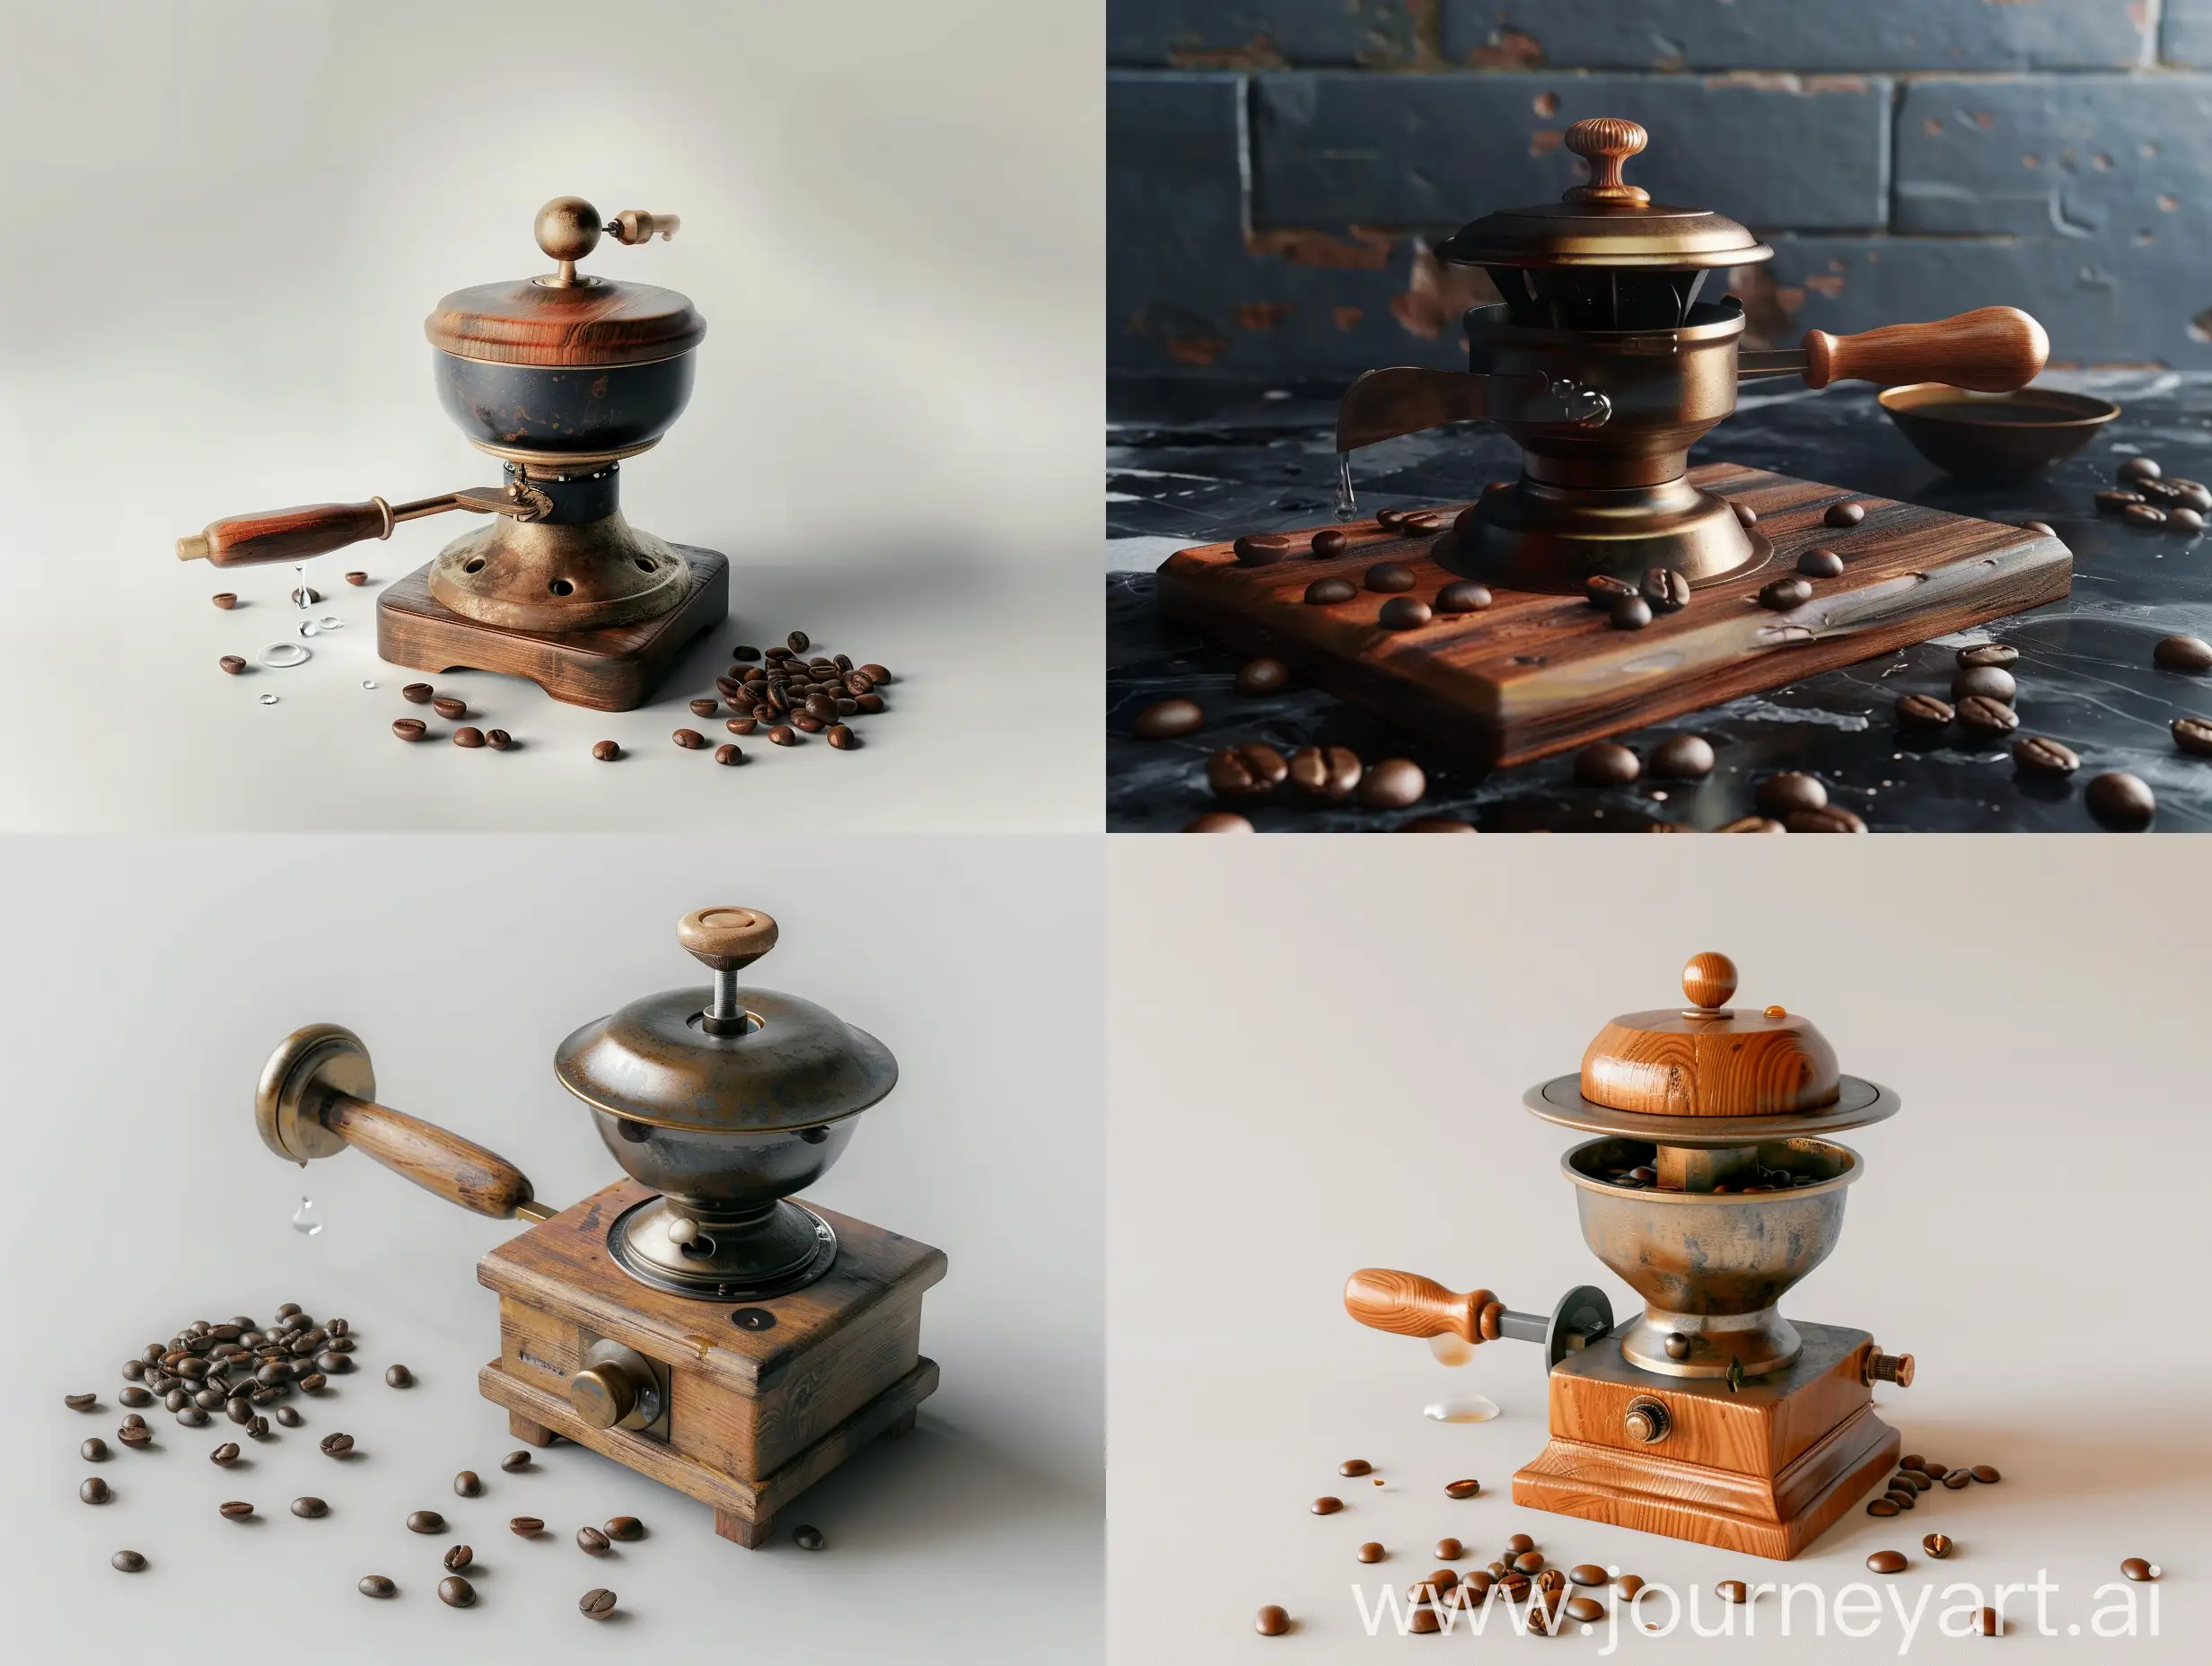 старая ручная кофемолка, деревянная, бронзовая ручка, фото реализм,  несколько кофейных зерен на ней,  и капля воды